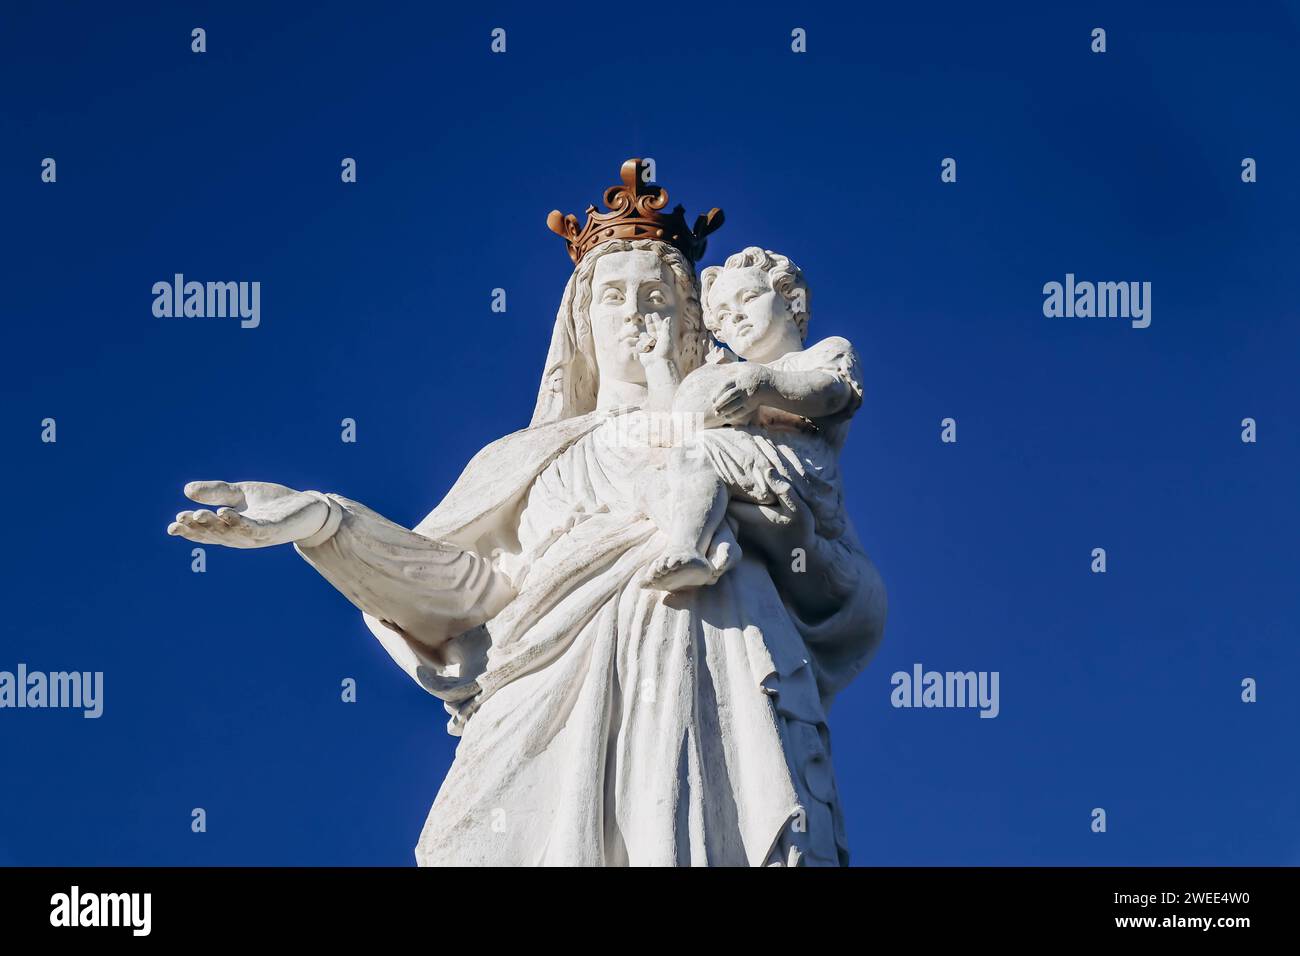 La Virgen de Monton, una estatua de una Virgen y un Niño situada en Francia en Veyre-Monton, en el departamento de Puy-de-Dome Foto de stock